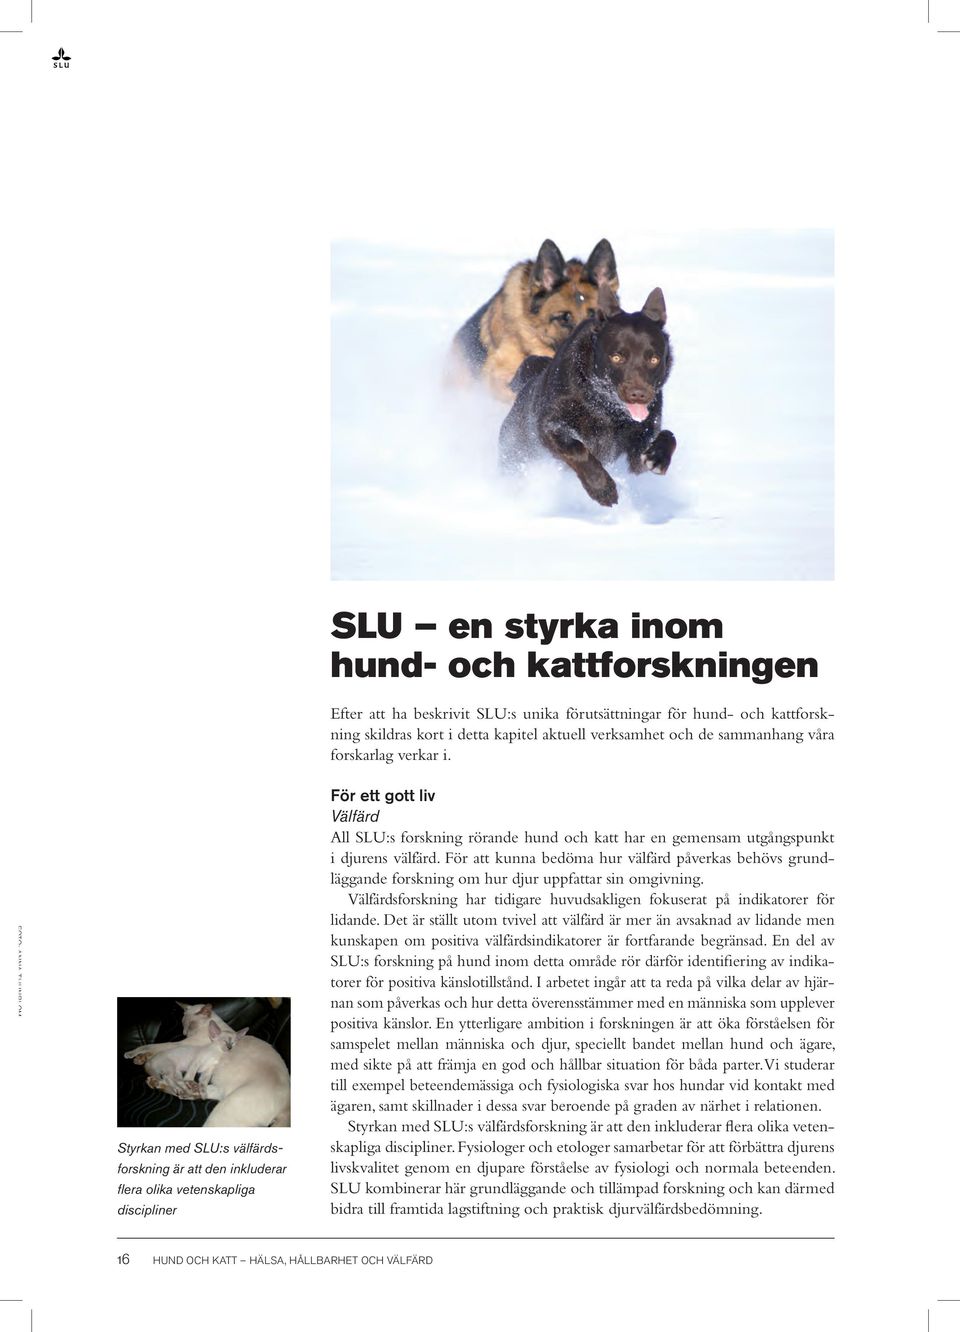 Foto: Anna Thunblom Styrkan med SLU:s välfärdsforskning är att den inkluderar flera olika vetenskapliga discipliner För ett gott liv Välfärd All SLU:s forskning rörande hund och katt har en gemensam